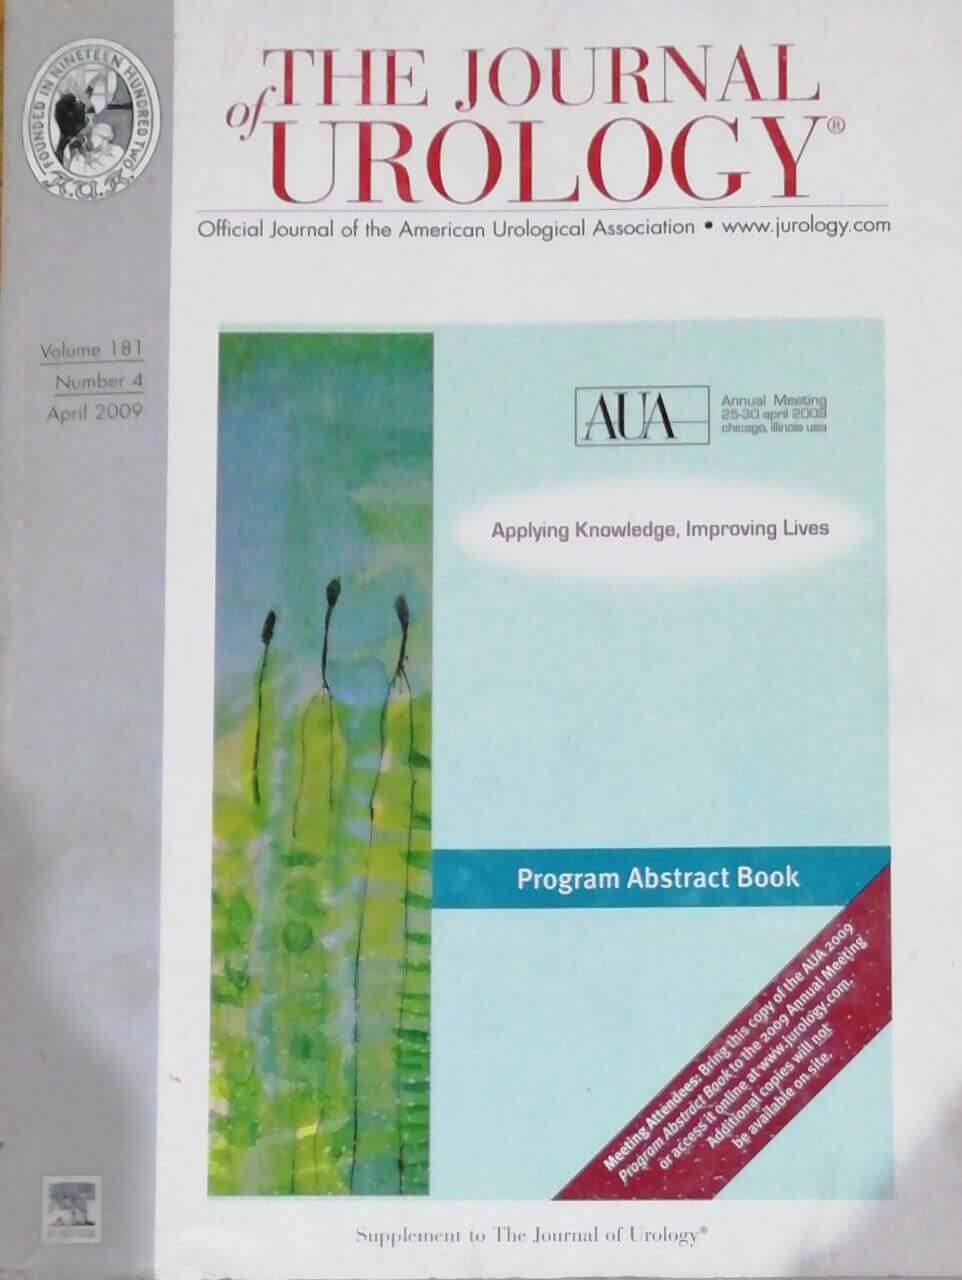 The Journal of Urology